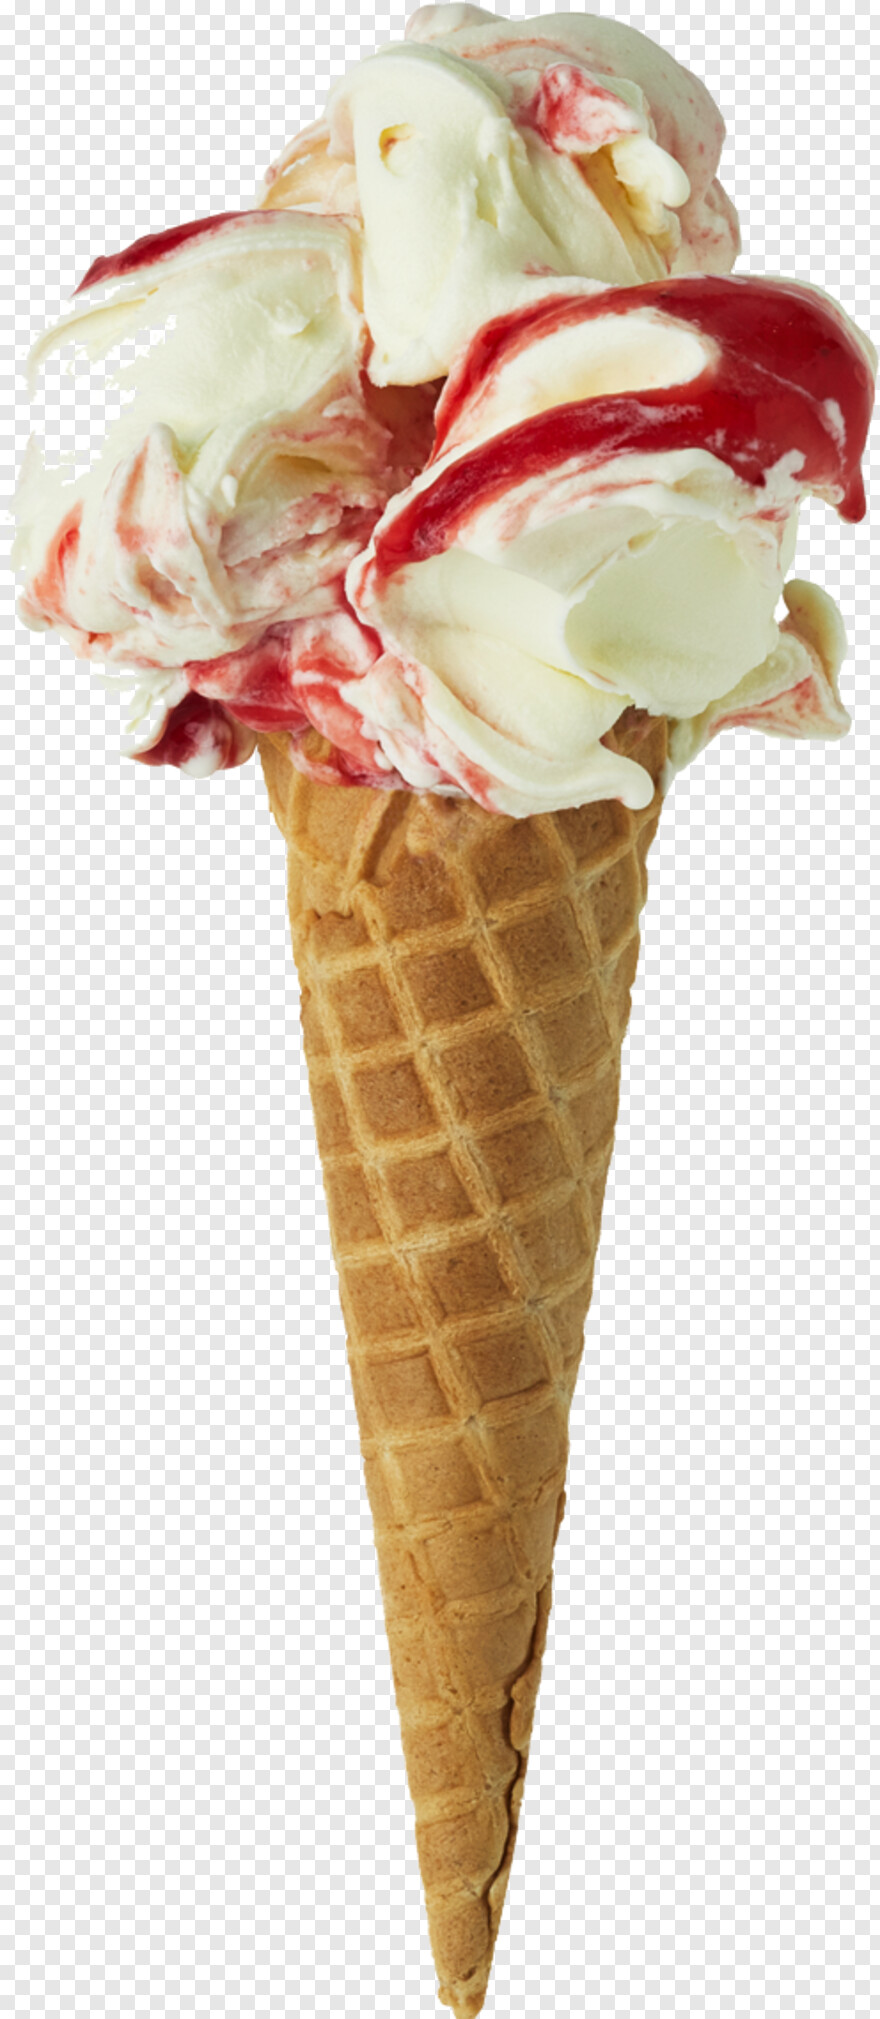 ice-cream-sundae # 966668